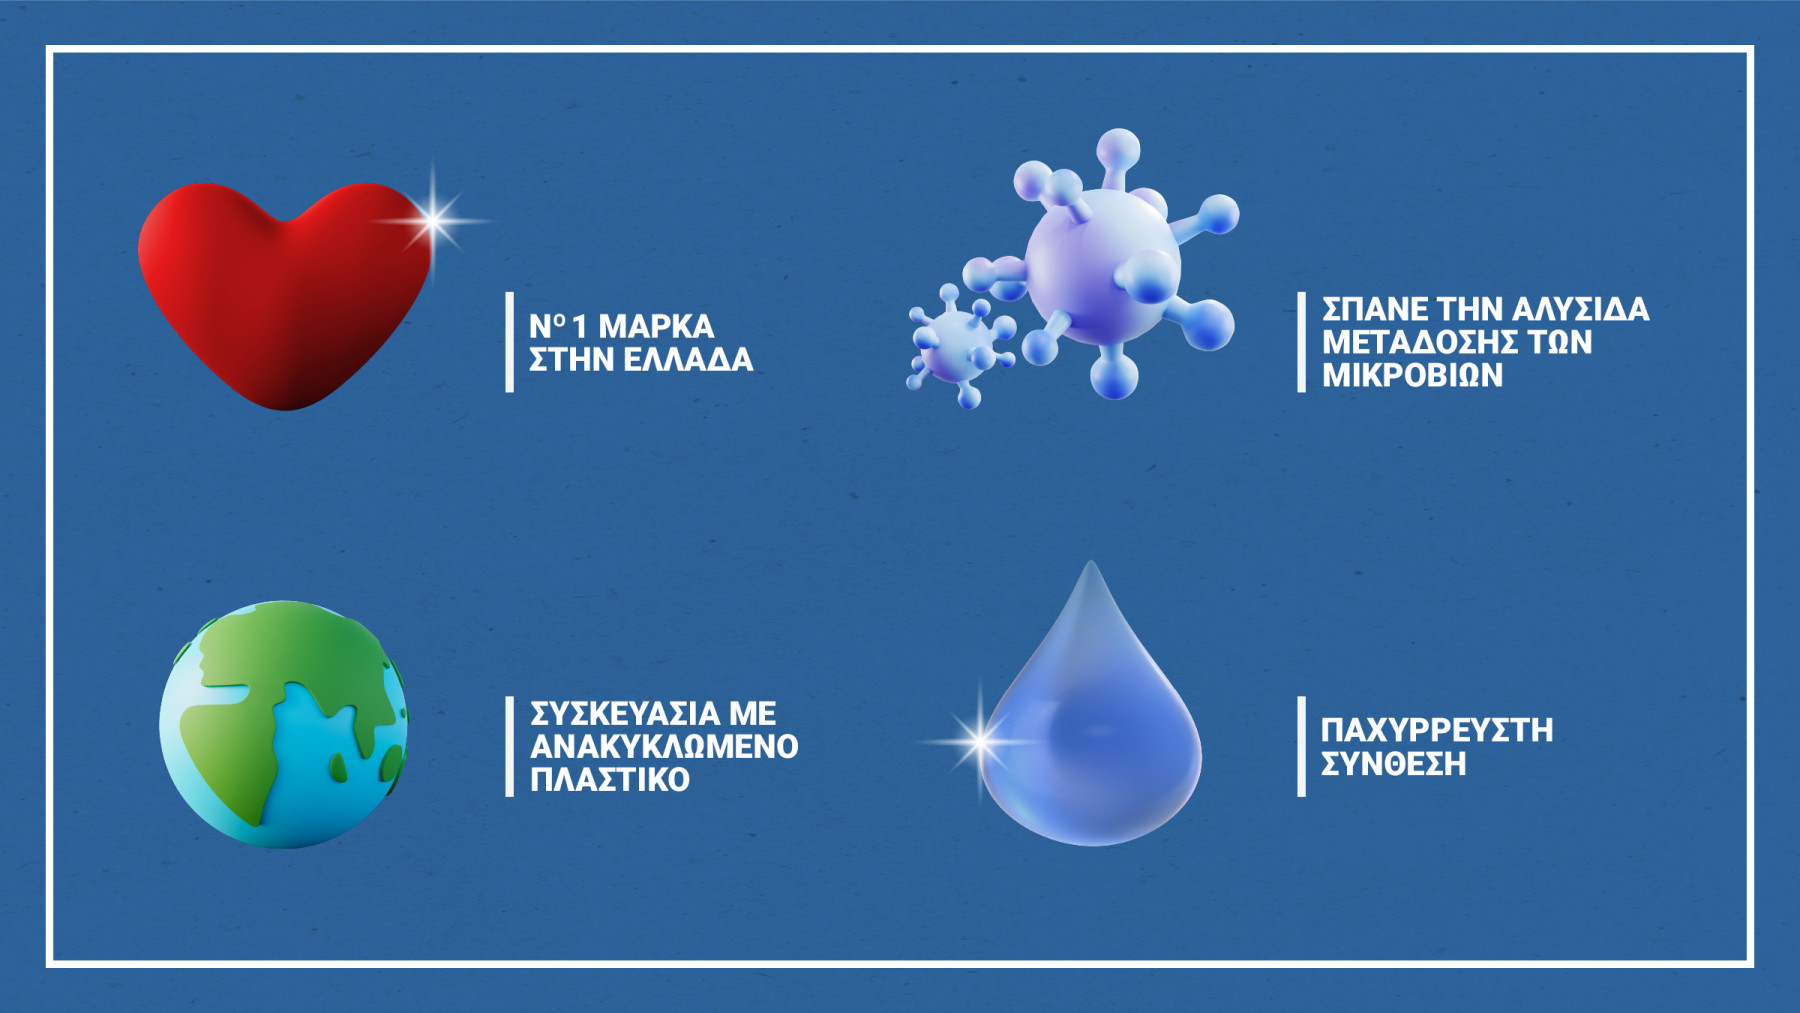 Η χλωρίνη Klinex είναι η νούμερο 1 μάρκα στην Ελλάδα. Διαθέτει συσκευασίες με ανακυκλωμένο πλαστικό και βοηθά στο να σπάσει η αλυσίδα μετάδοσης των μικροβίων με την παχύρρευστη σύνθεσή της.